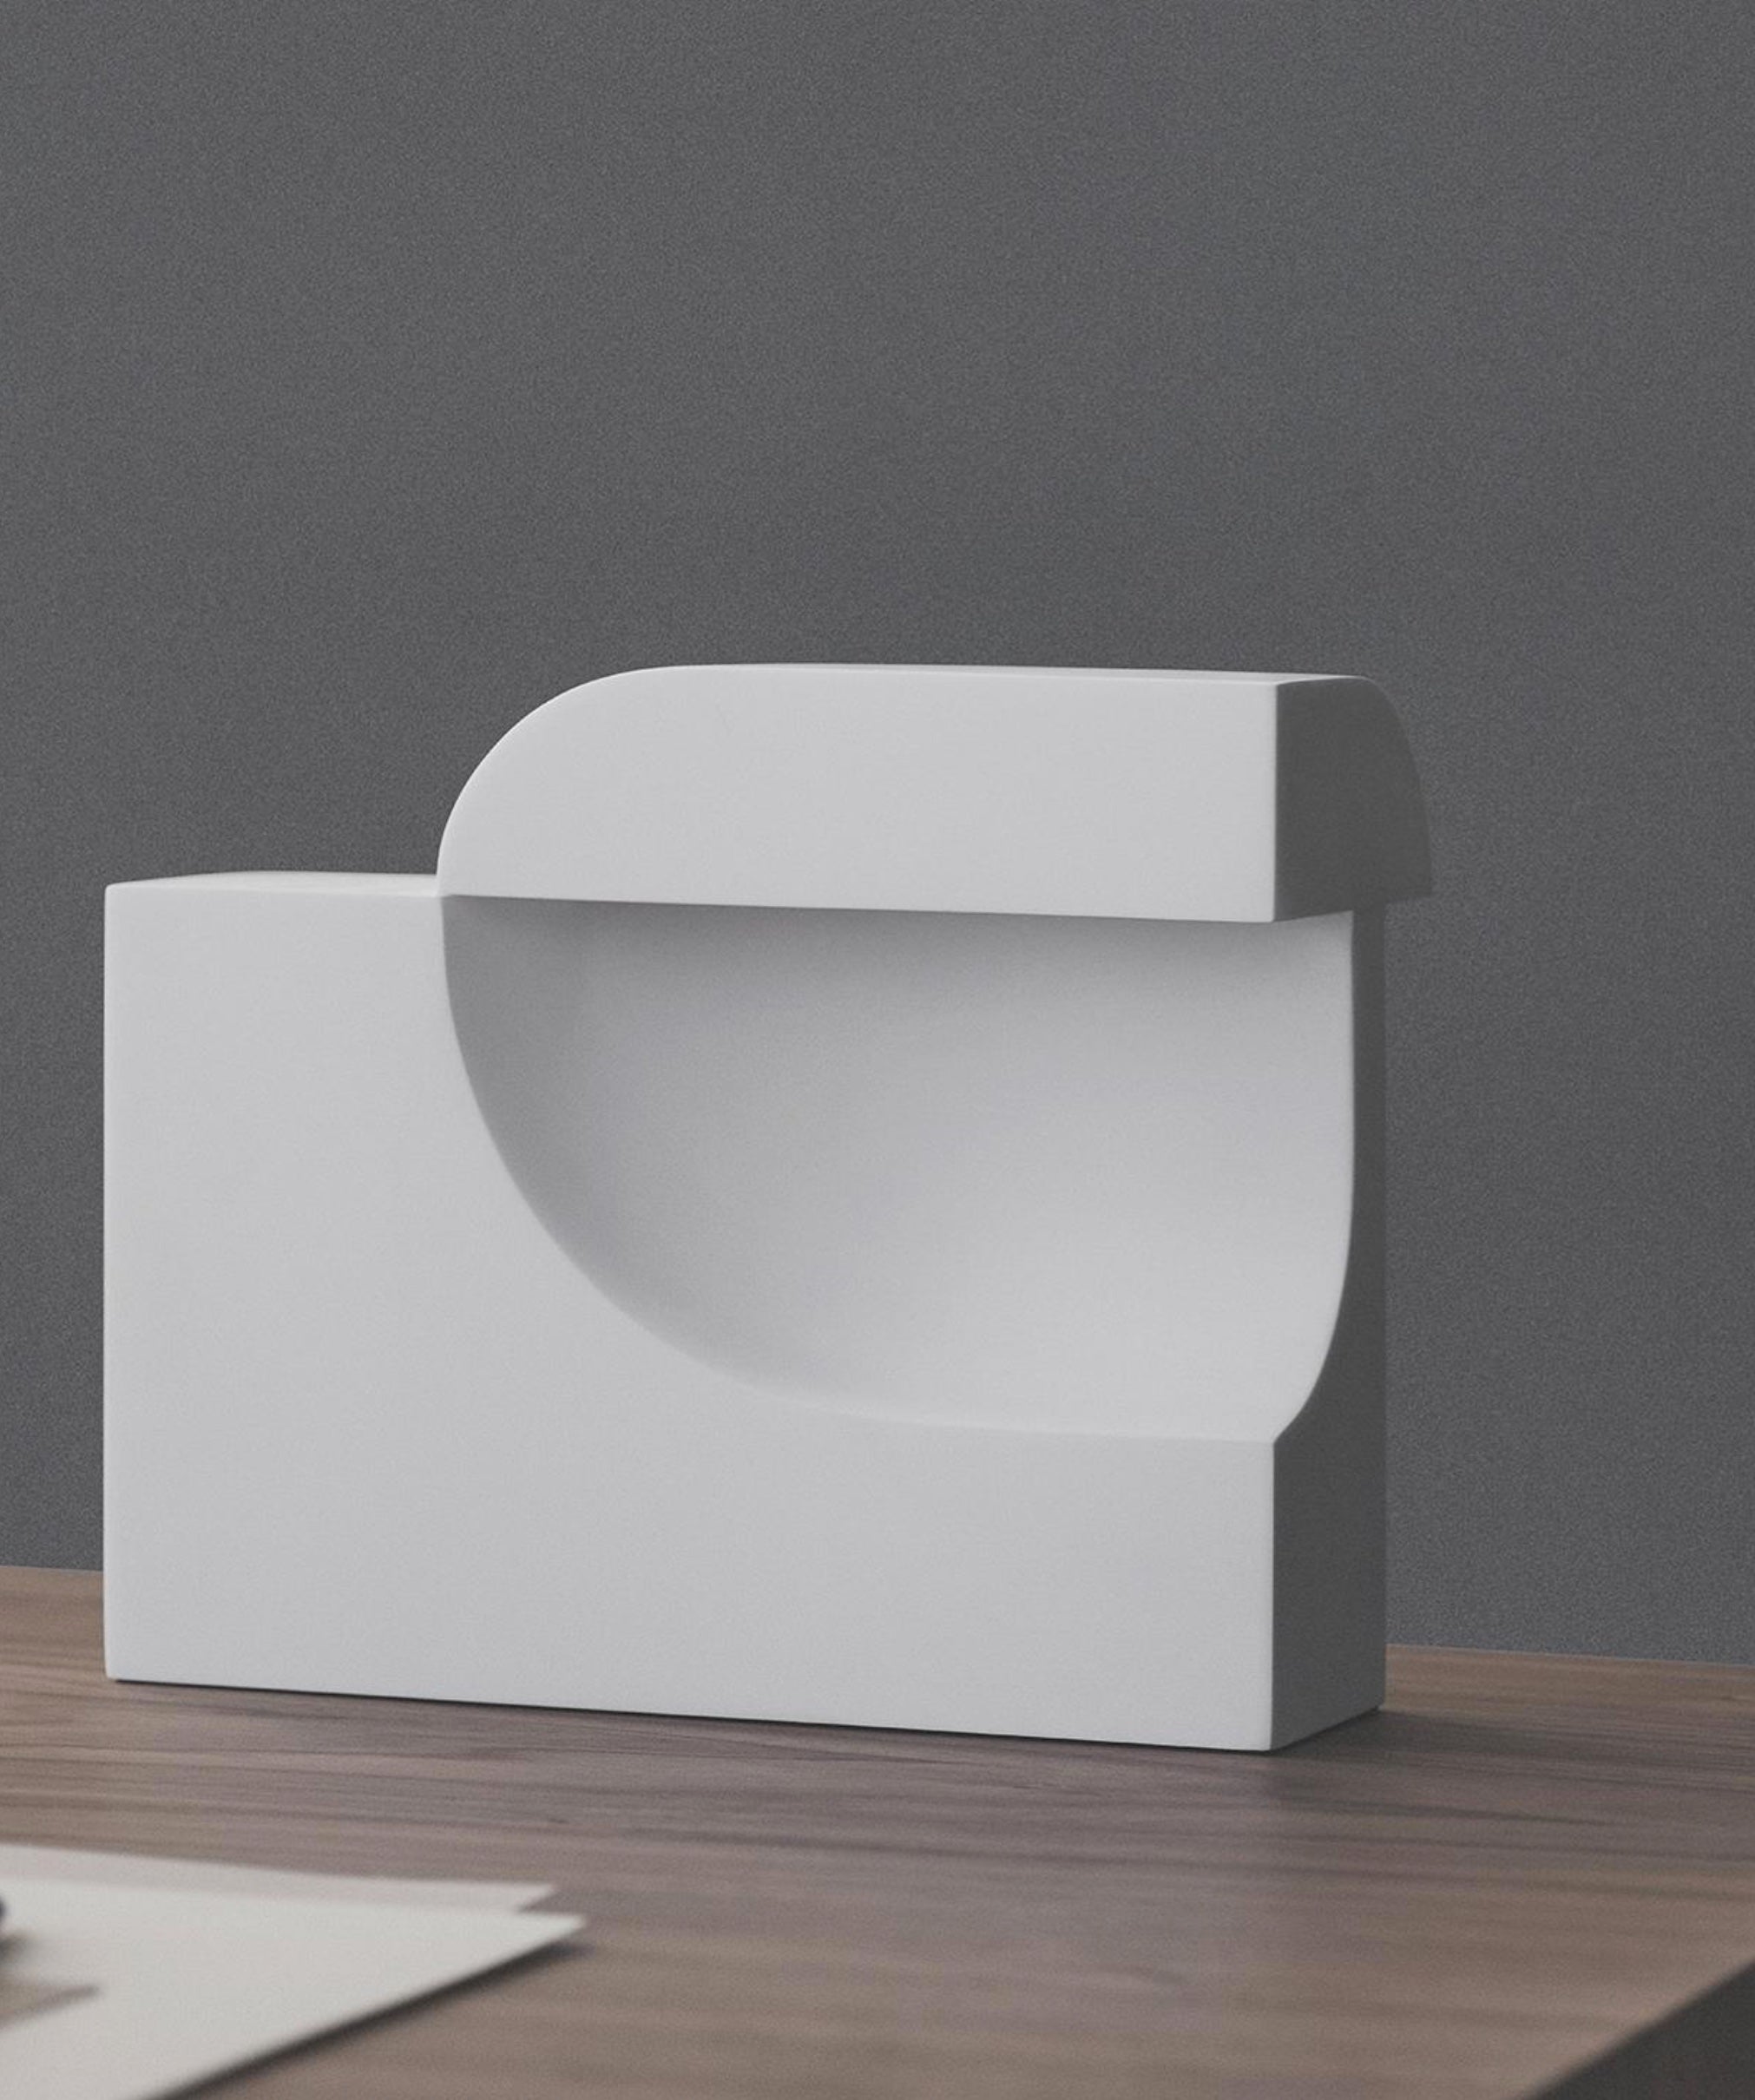 Moby est une lampe de table extraordinairement sculpturale. Rempli de contrastes intrigants, il équilibre une lumière douce et réconfortante avec un design frappant et futuriste. Le vide dans l'élément principal crée une petite calotte dans laquelle